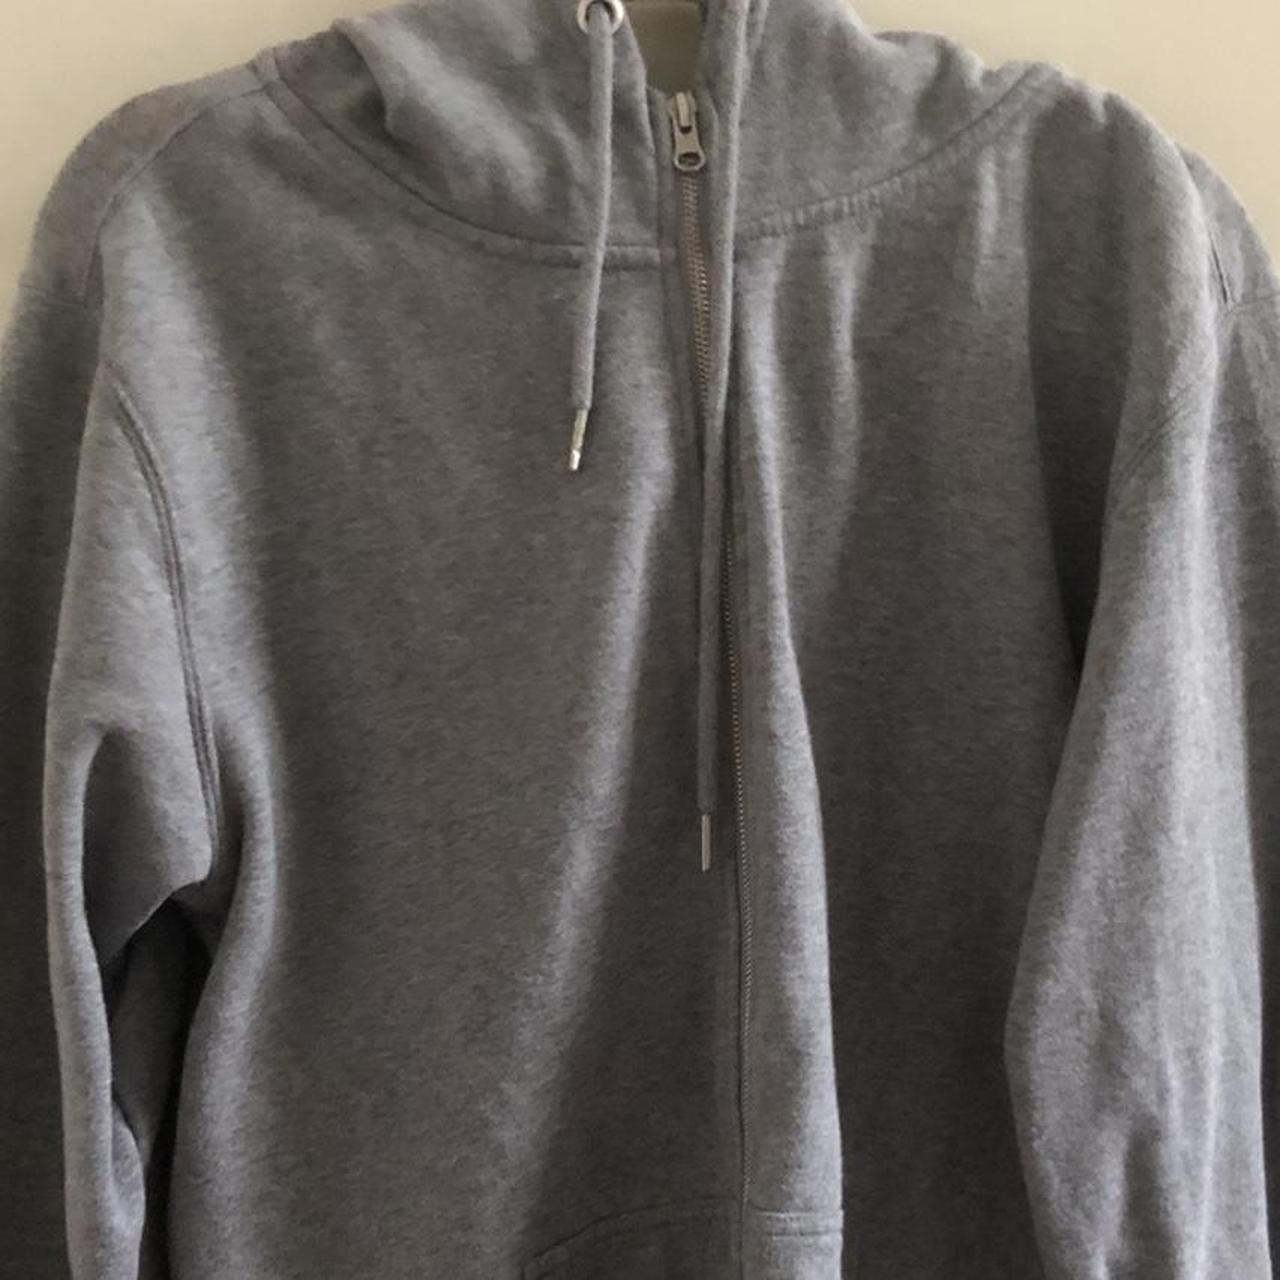 Ghanda oversized grey zip up hoodie Mint... - Depop